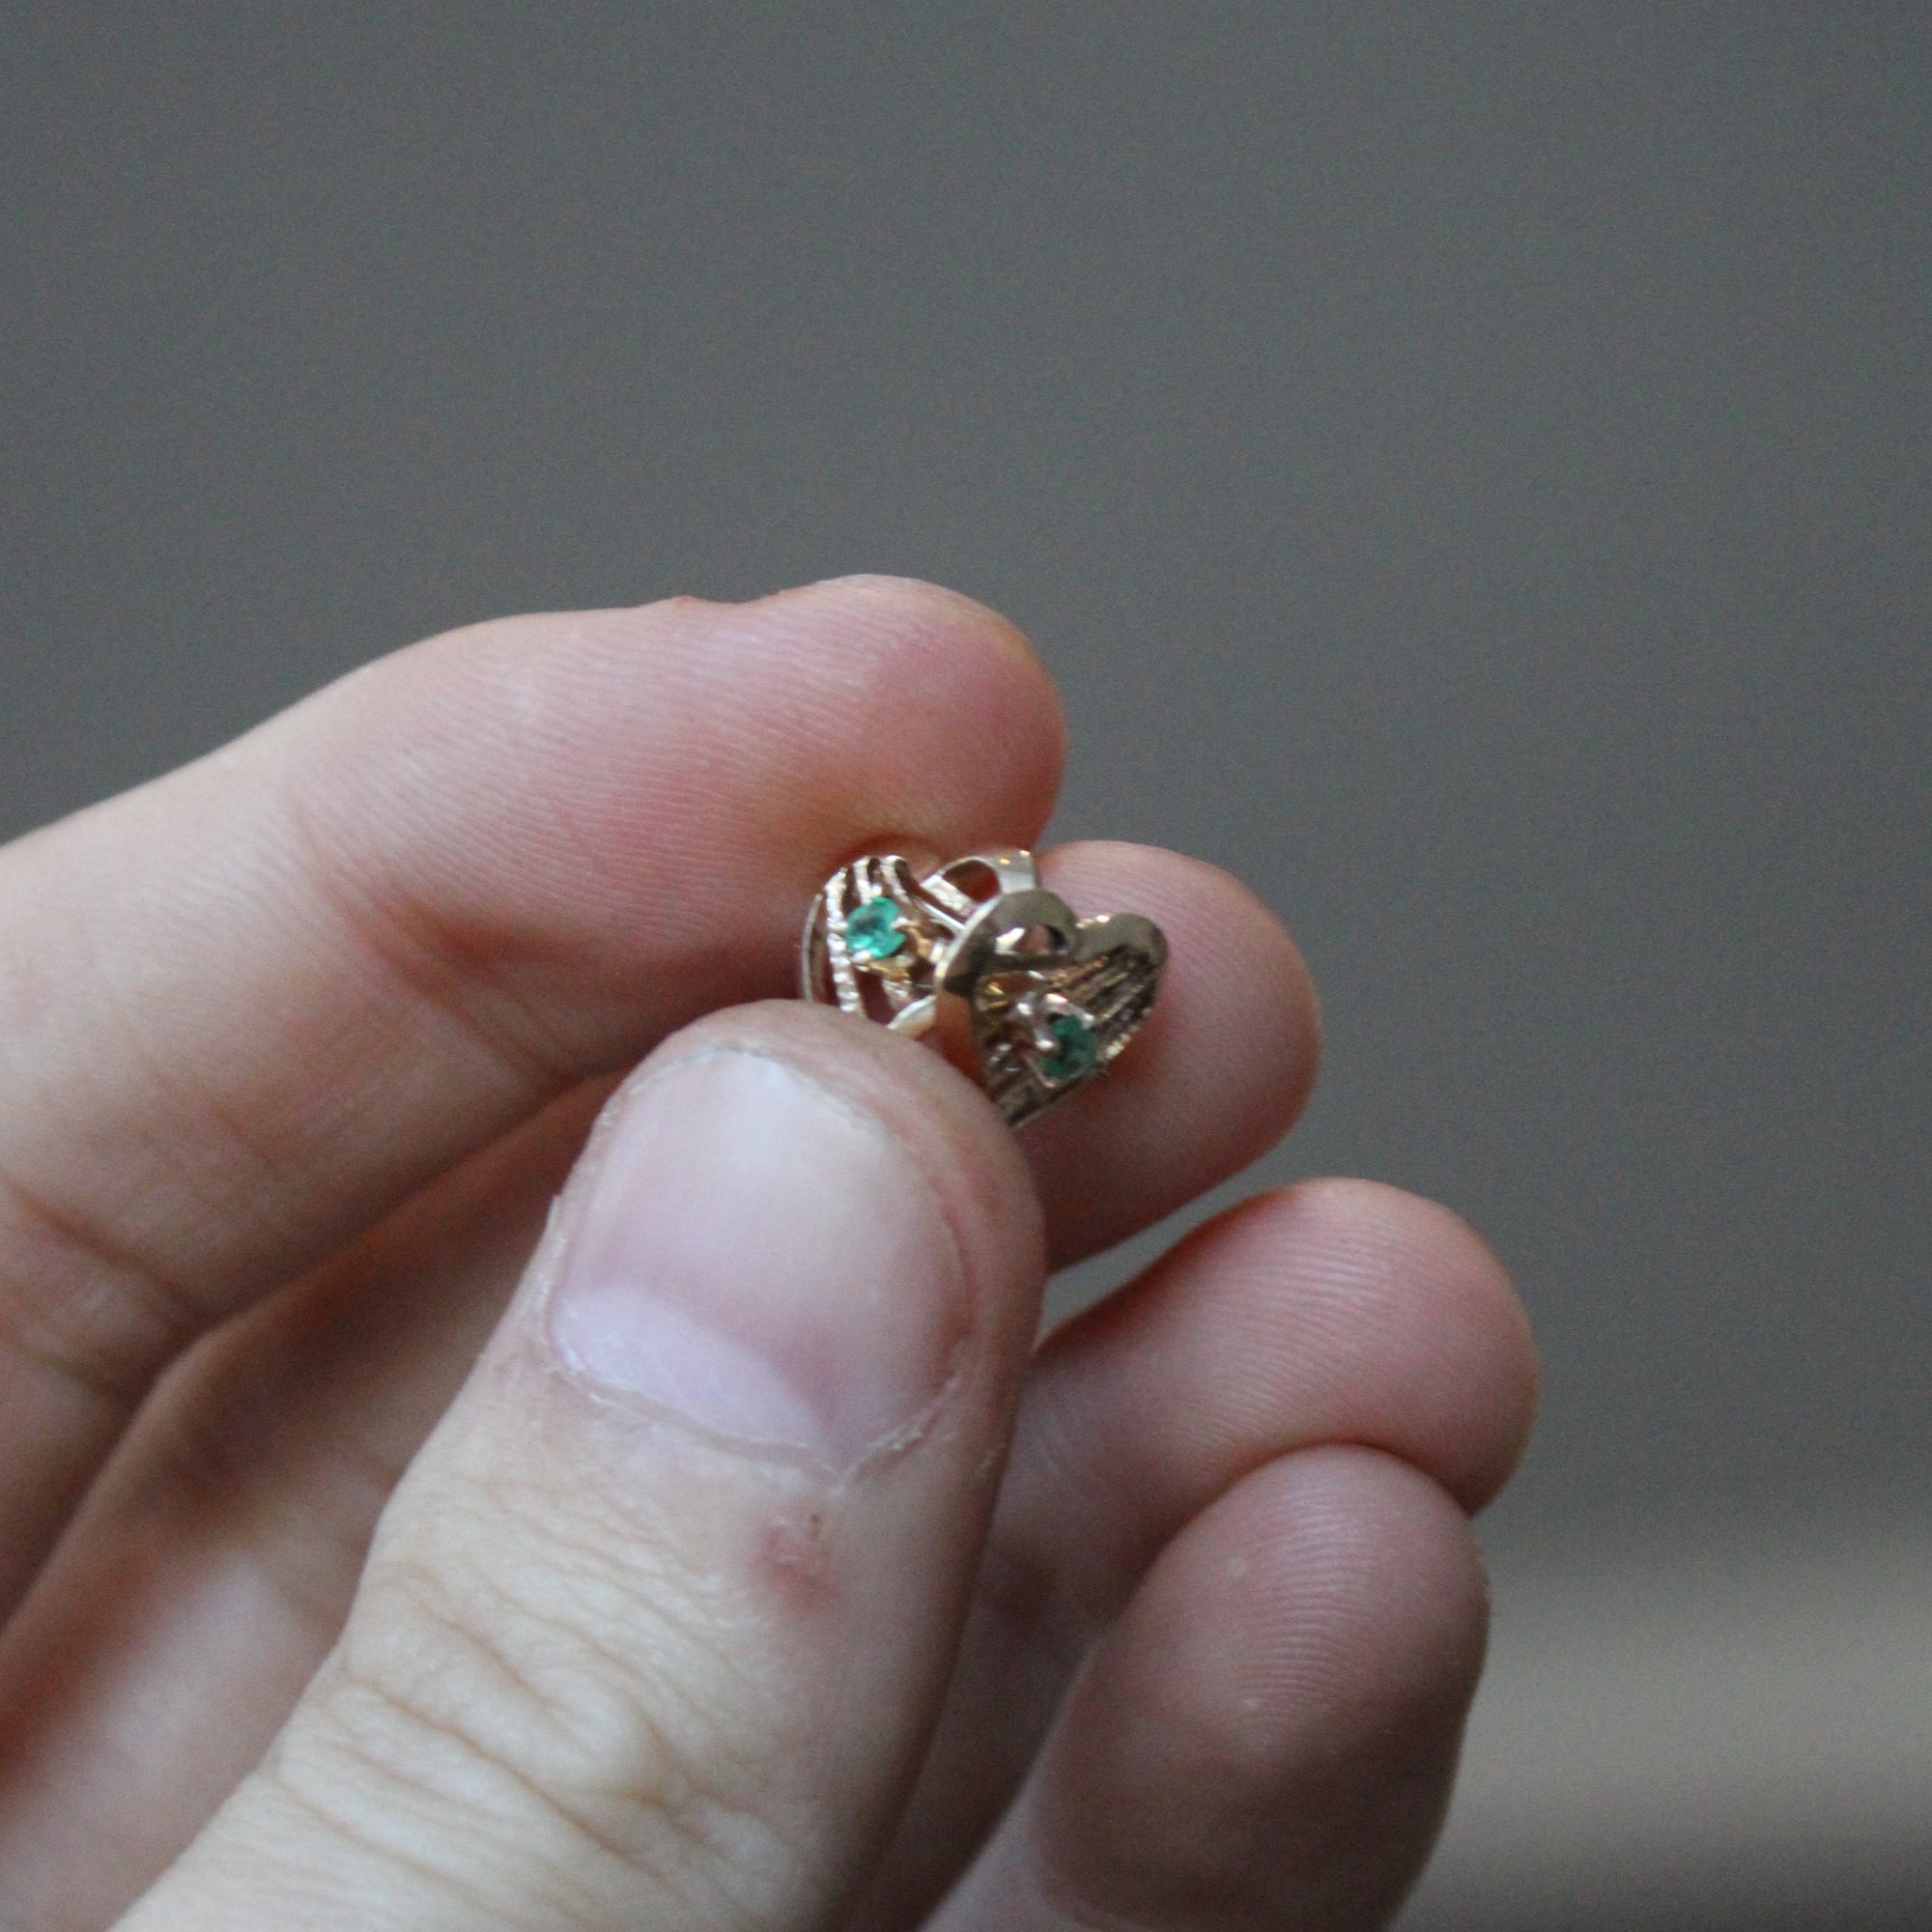 Synthetic Emerald Heart Earrings | 0.04ctw |